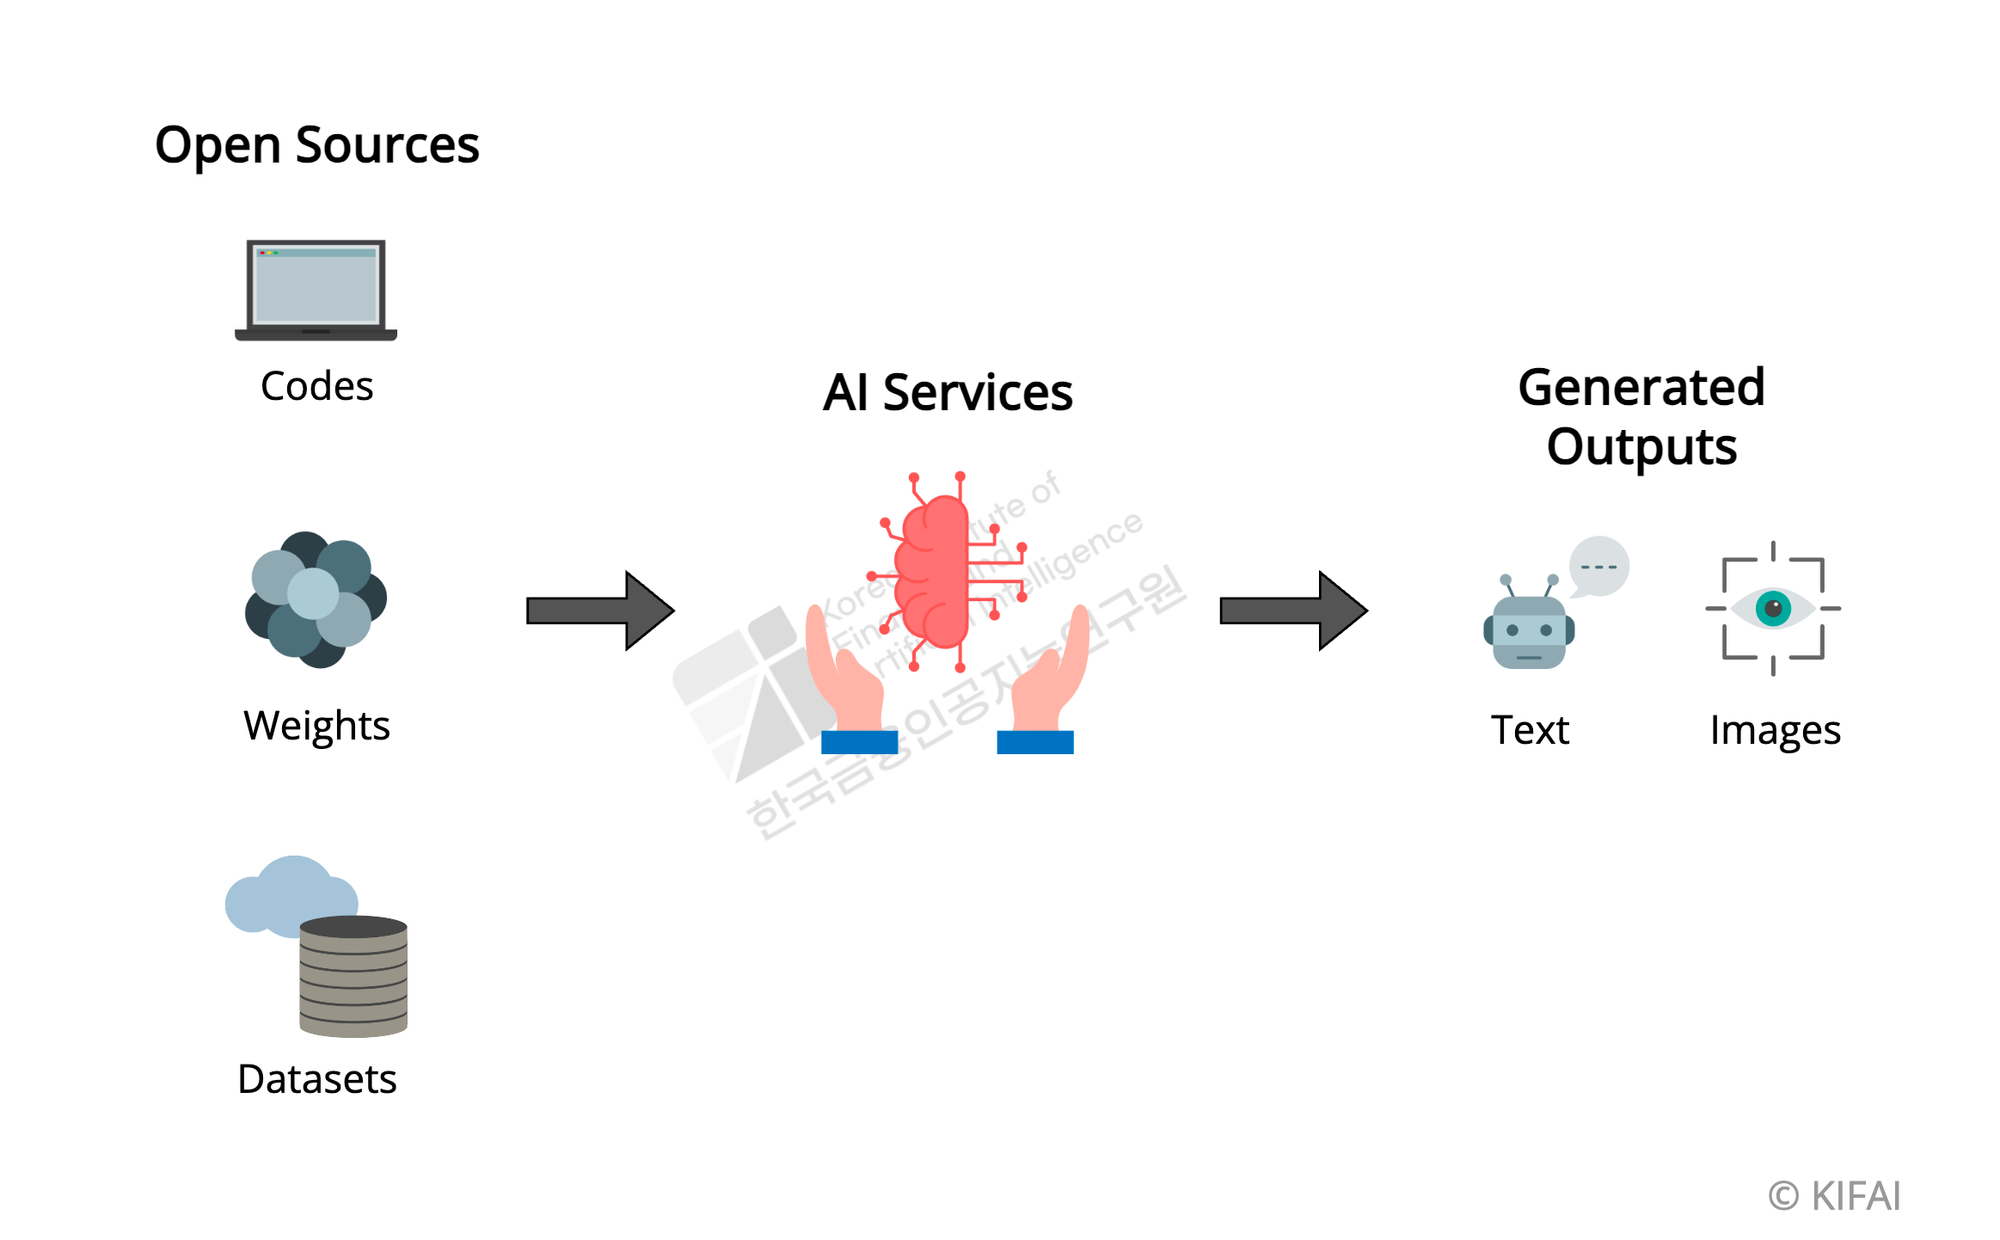 오픈소스(코드, 모델, 데이터셋 등)를 활용한 AI 서비스 개발과 생성되는 결과물의 프로세스를 설명하기 위한 그림